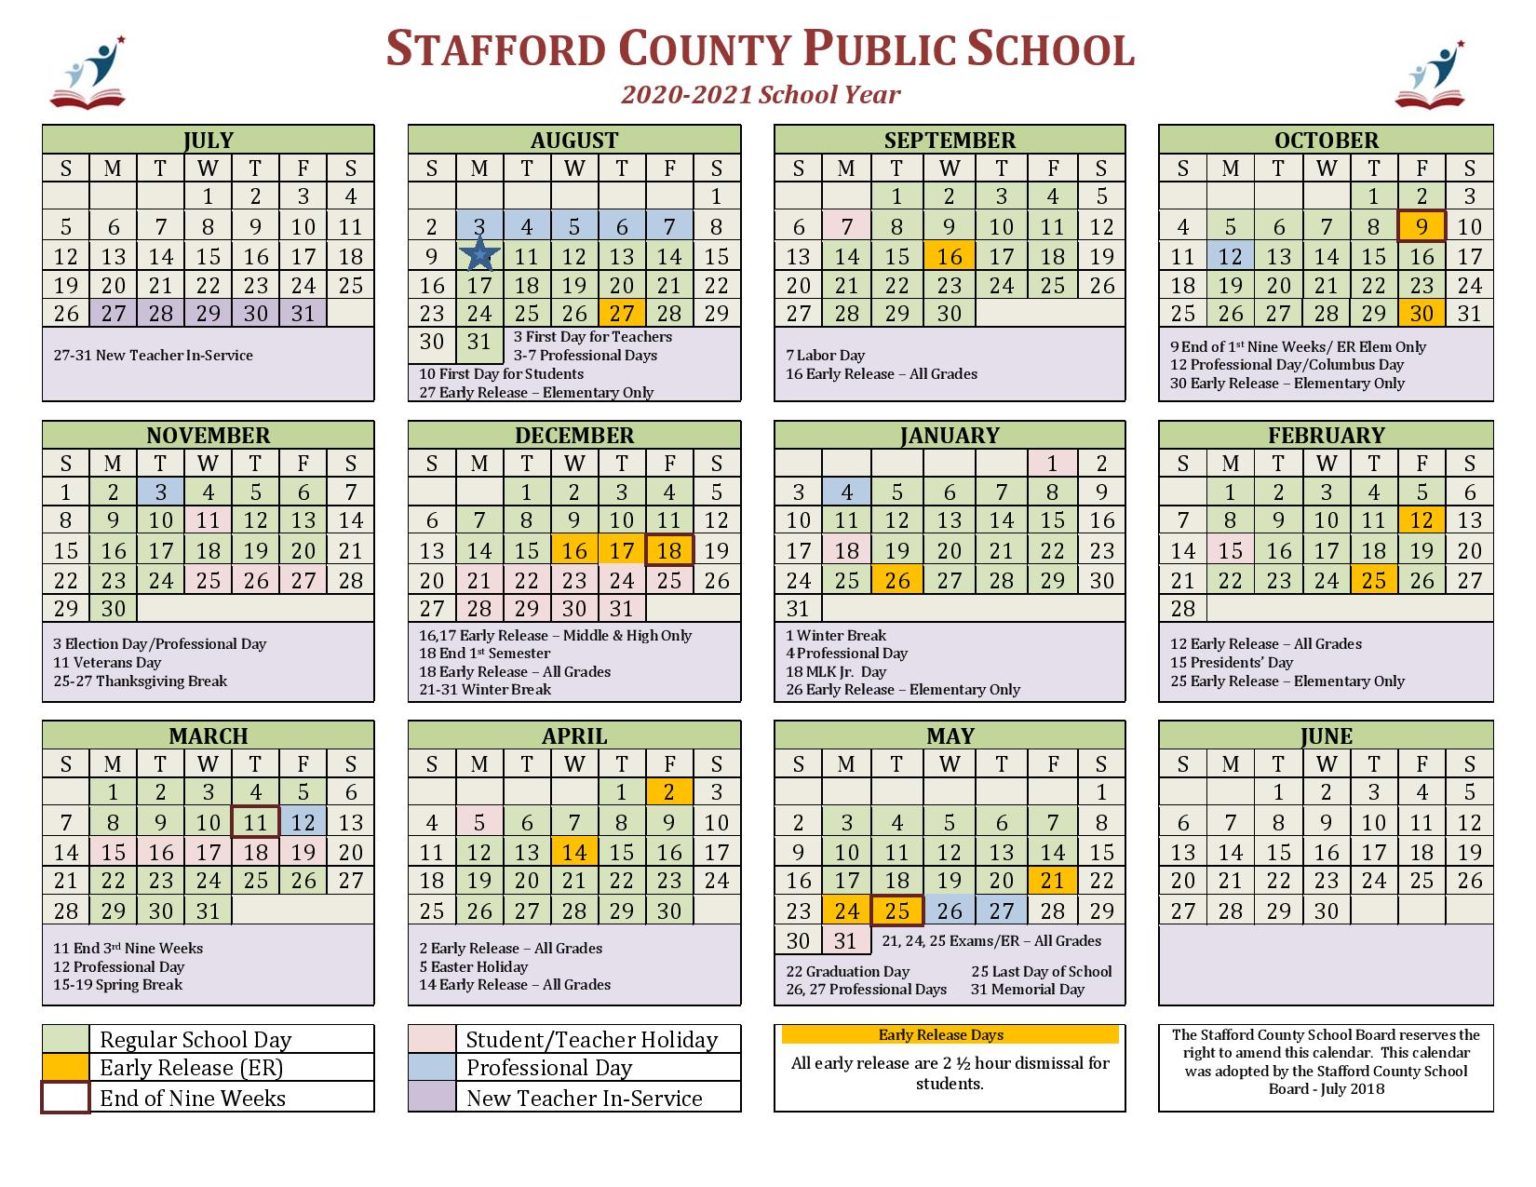 Stafford County Public Schools Calendar 2020-2021